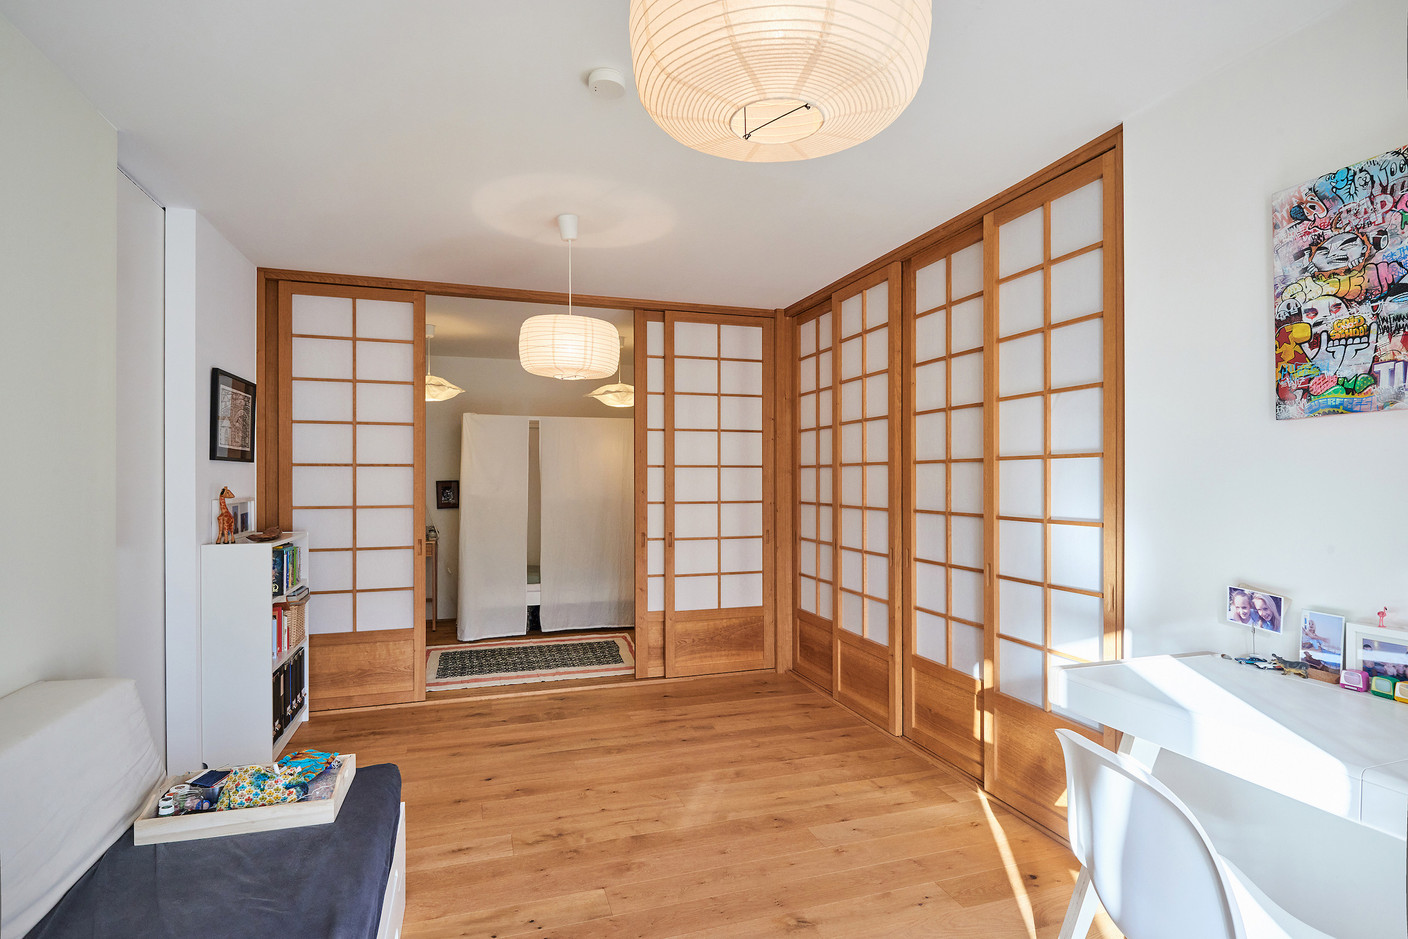 Au rez-de-chaussée, un espace à l’esprit minimaliste sert de pièce multifonctionnelle. Derrière des parois coulissantes d’inspiration japonaise se dissimulent buanderie, chambres des enfants, placards… (Photo: Andrés Lejona/Maison Moderne)